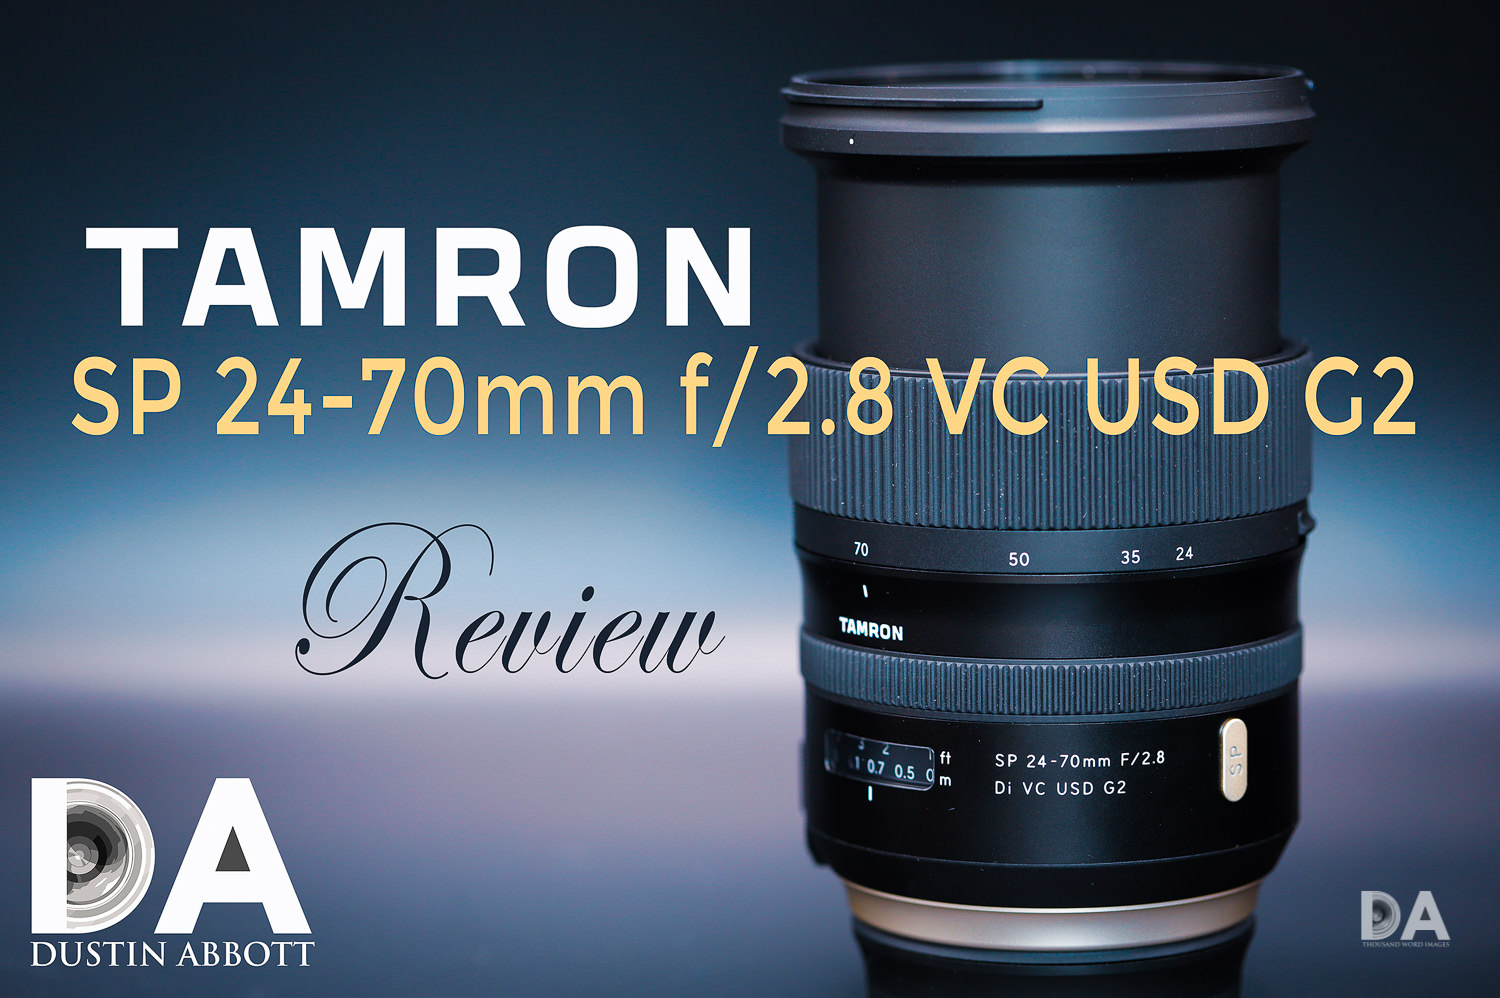 Tamron SP 24-70mm f/2.8 Di VC USD G2 Review - DustinAbbott.net